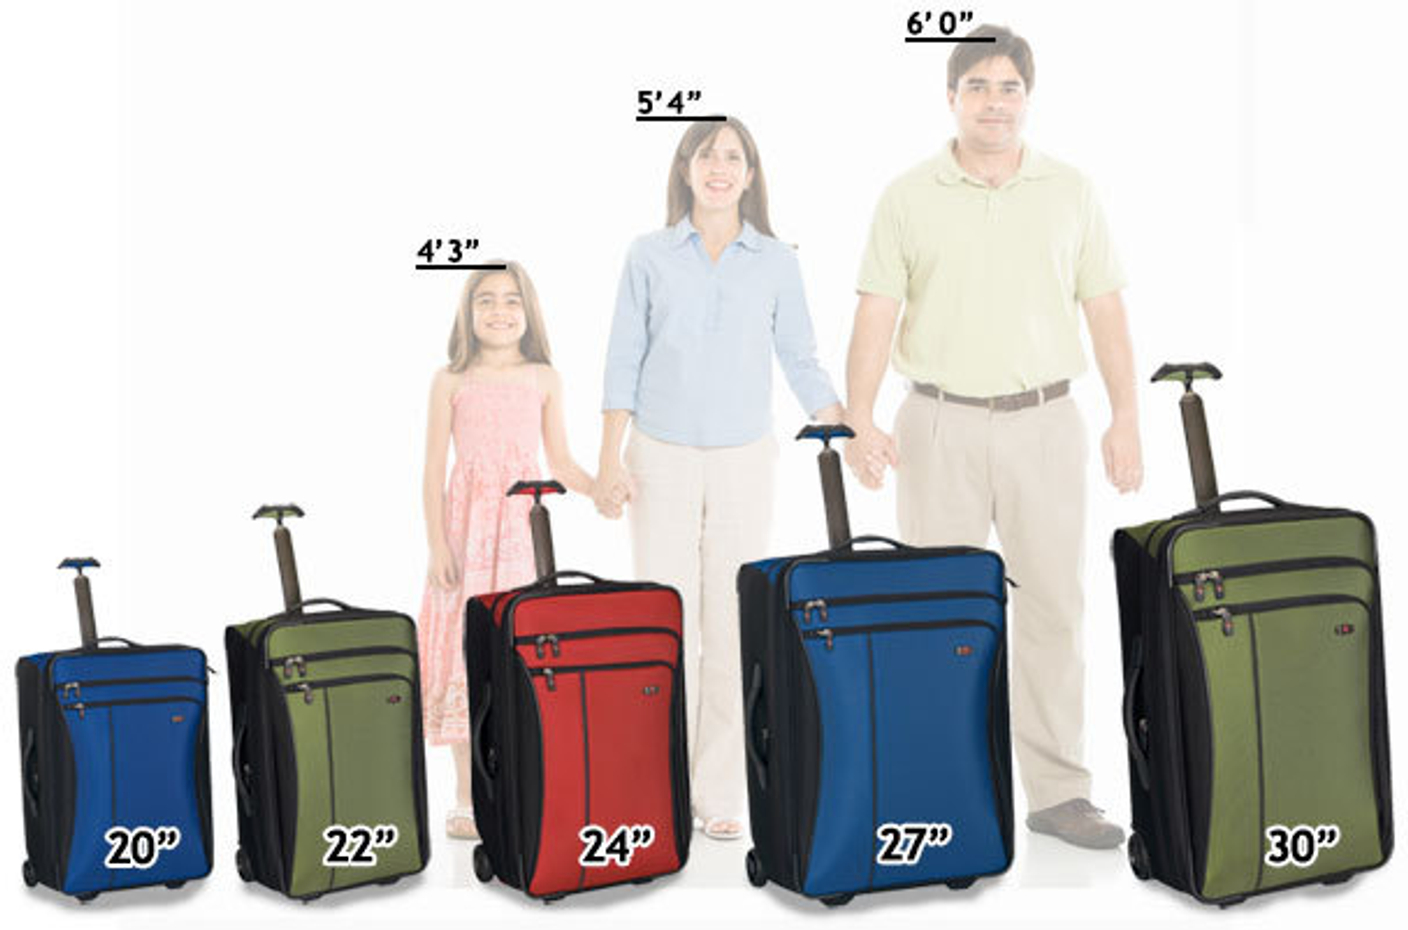 Какую размером сумку можно. Samsonite чемодан big Size. Габариты чемодана самсонайт 158 см. 55 40 23 Ручная кладь. Размер чемодана для багажа 23 кг.